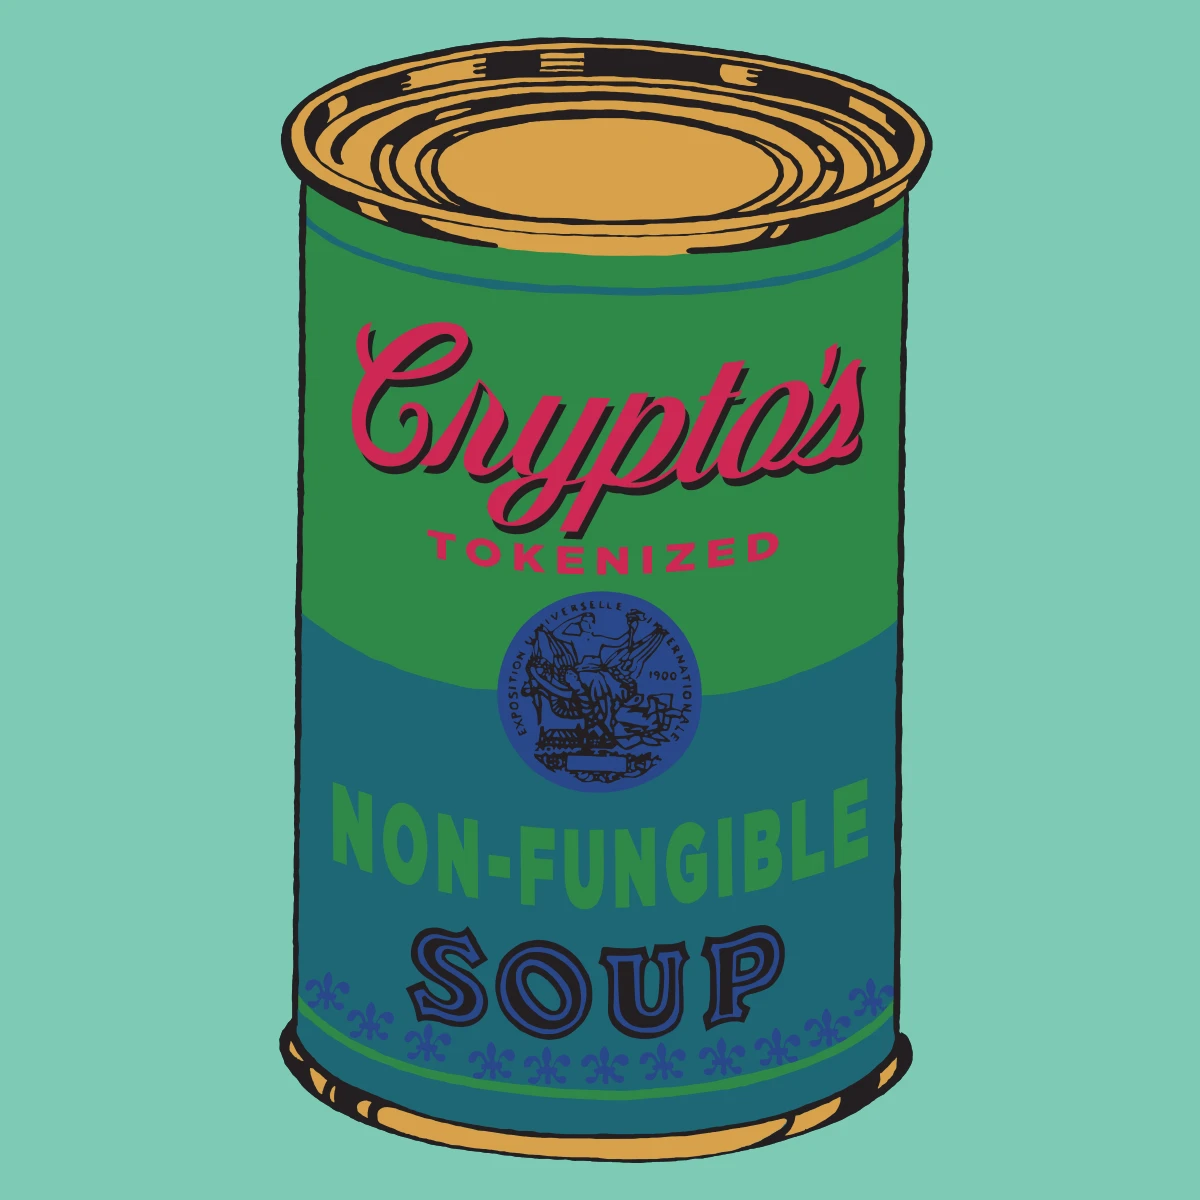 Non-Fungible Soup #0114